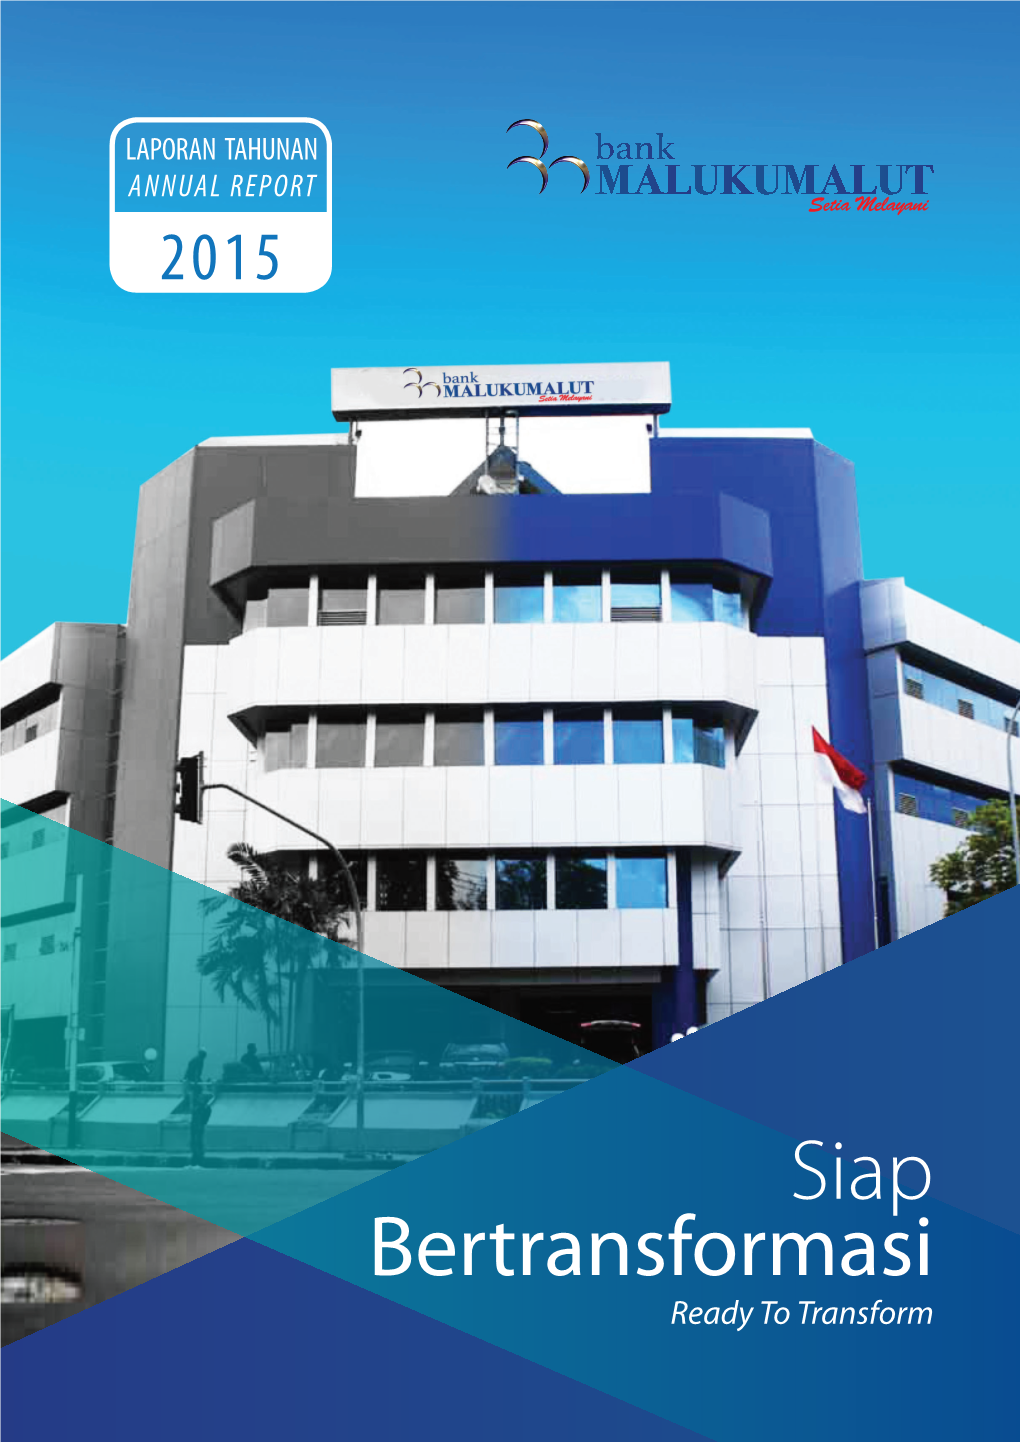 Siap Bertransformasi Ready to Transform Siap Bertransformasi Bankready Maluku Malut to // Annual Transform Report 2015 1 Daftar Isi Table of Contents